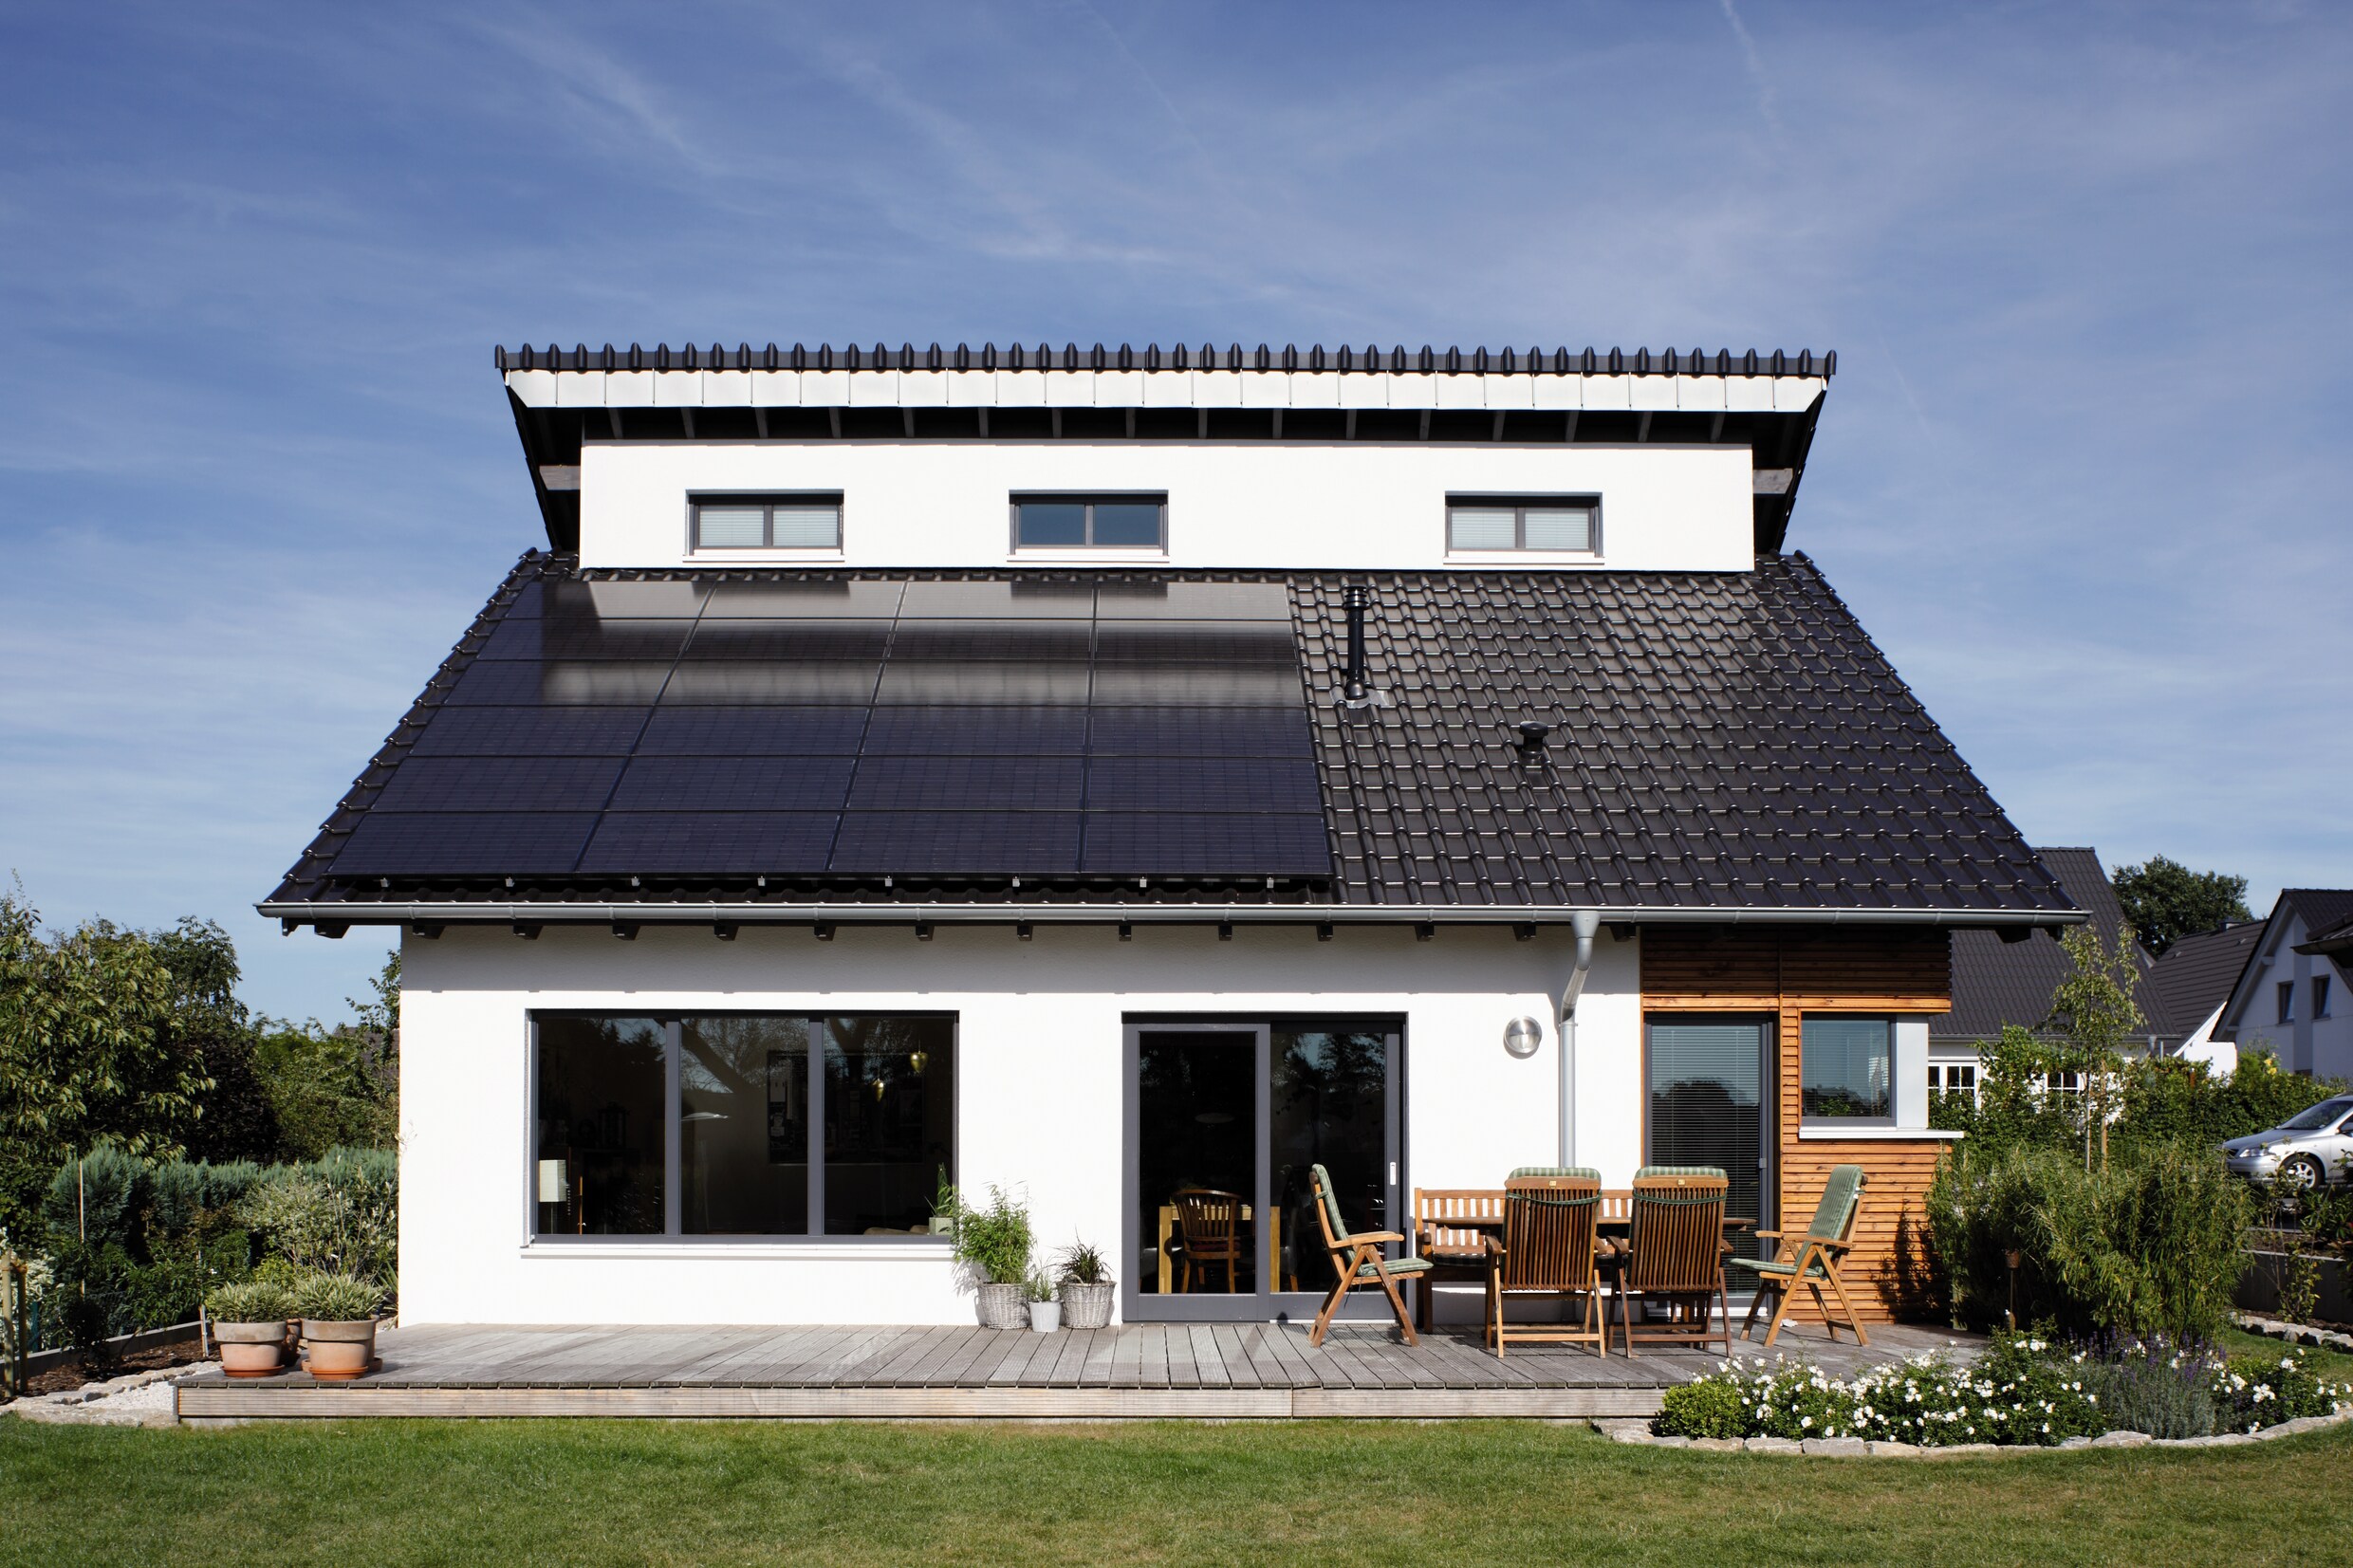 Vlaanderen keurt nieuwe premie voor zonnepanelen goed: tot 1.500 euro steun vanaf 2021